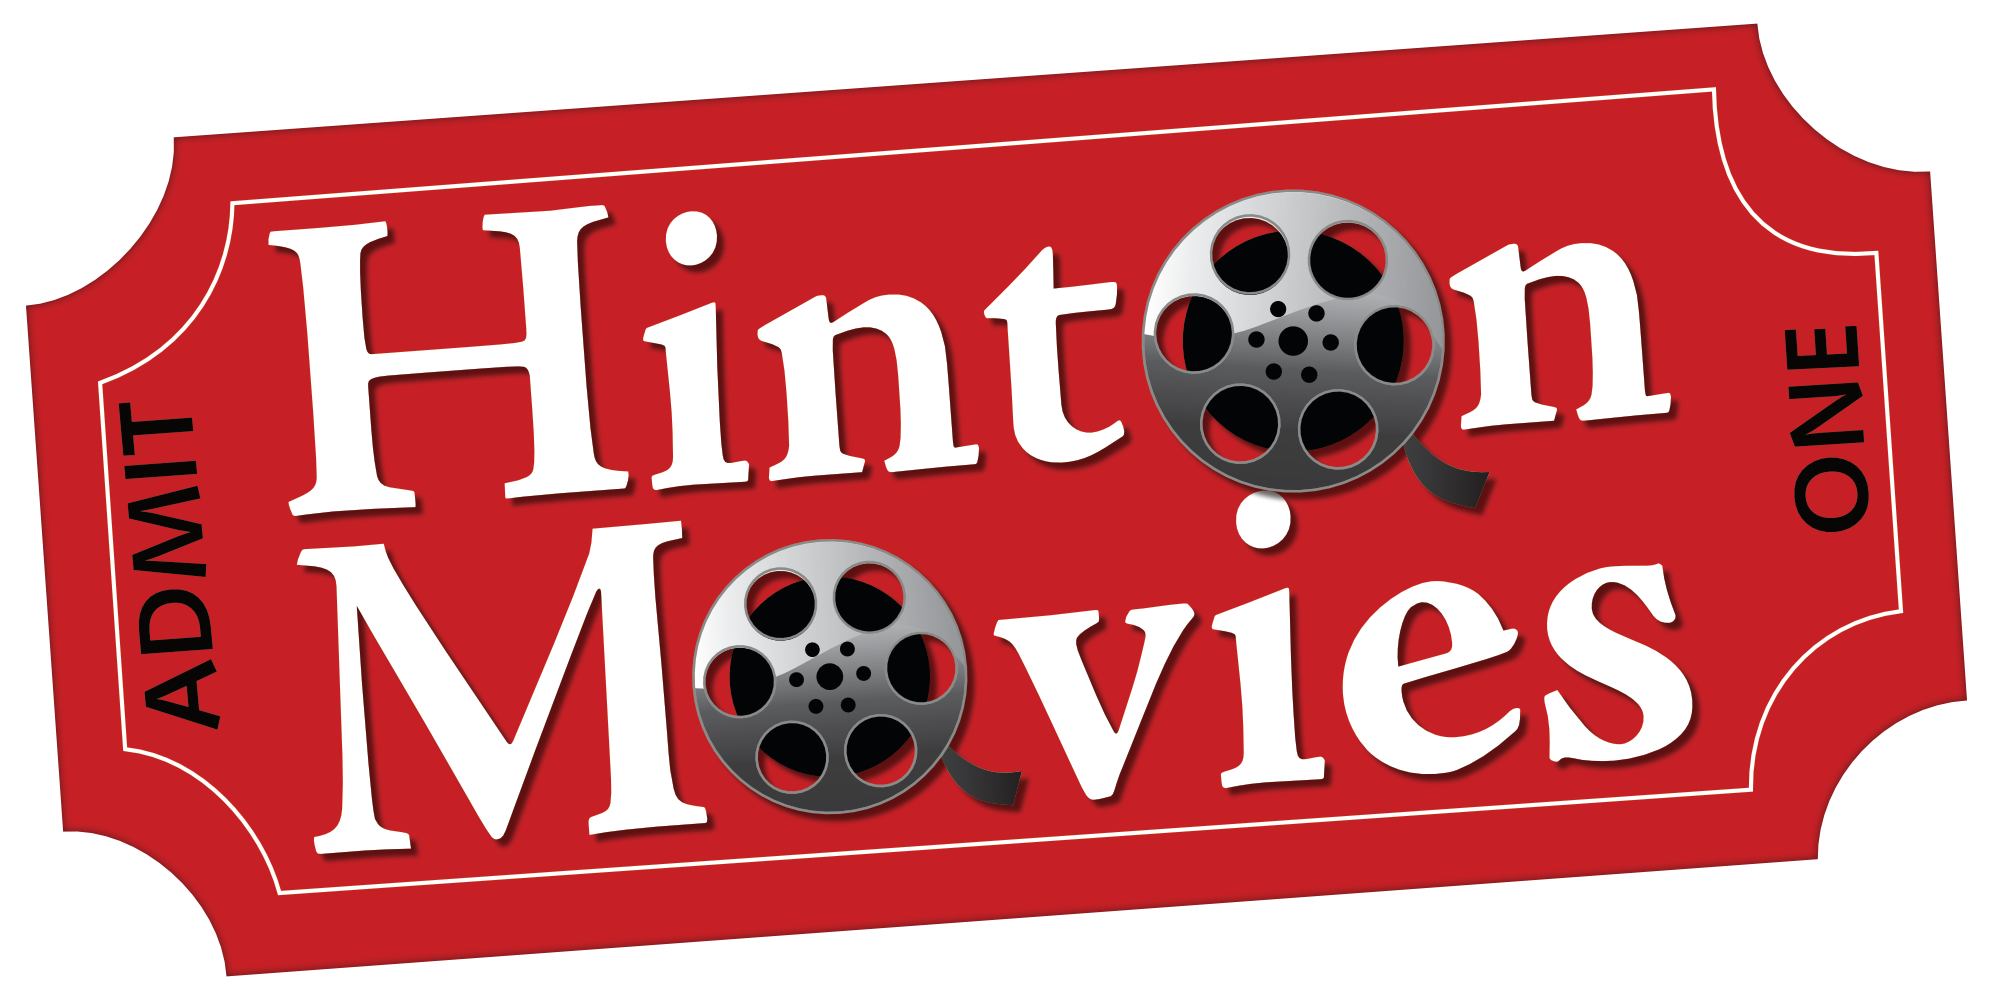 Hinton Movies